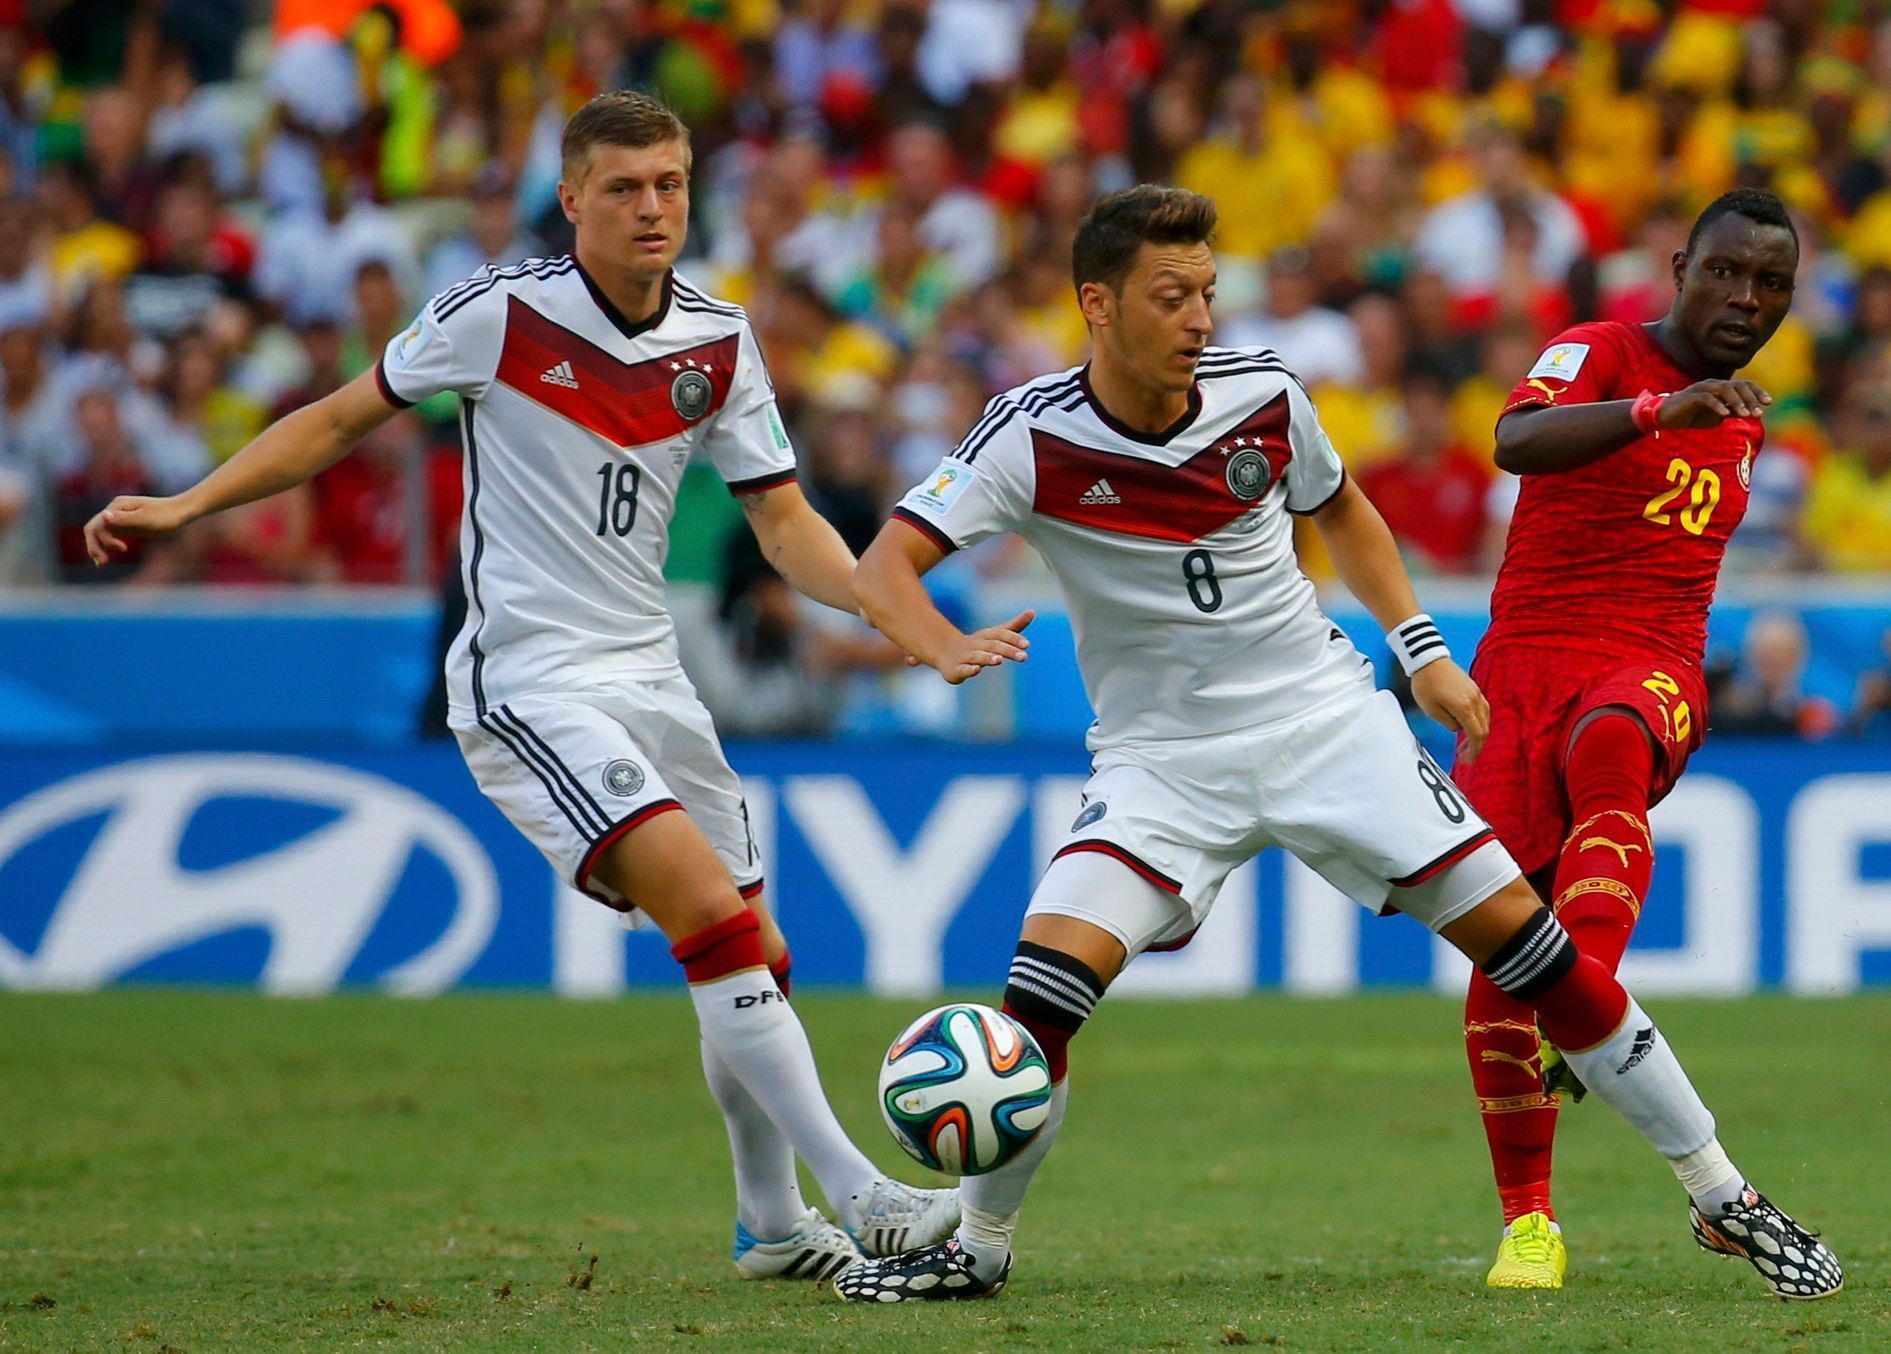 Utkání MS Německo vs. Ghana (Özil, Kroos, Asamoah)